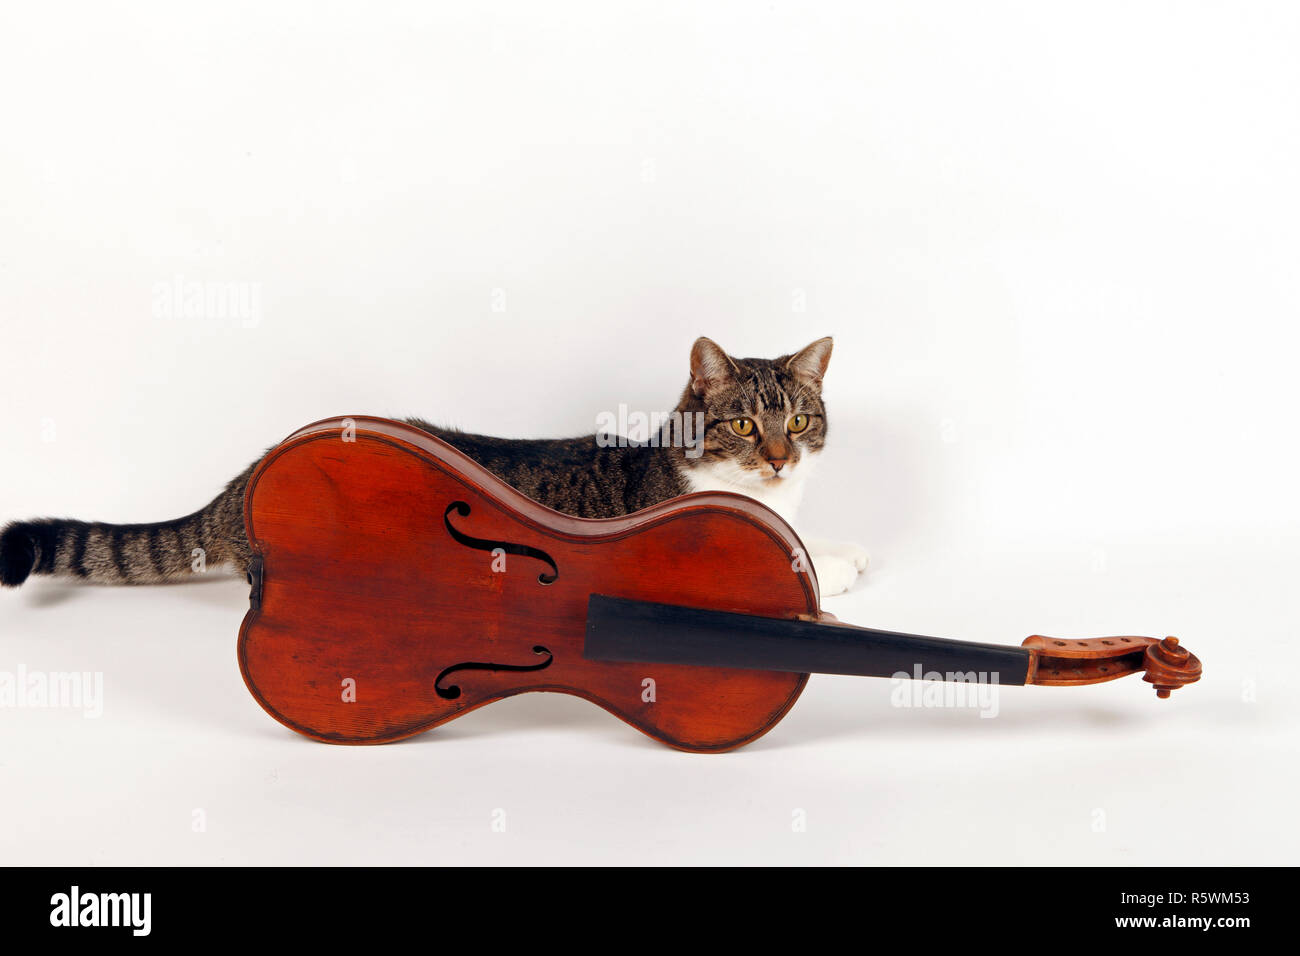 Ancien corps de violon en forme de poire avec un chat tabby et blanc  derrière Photo Stock - Alamy